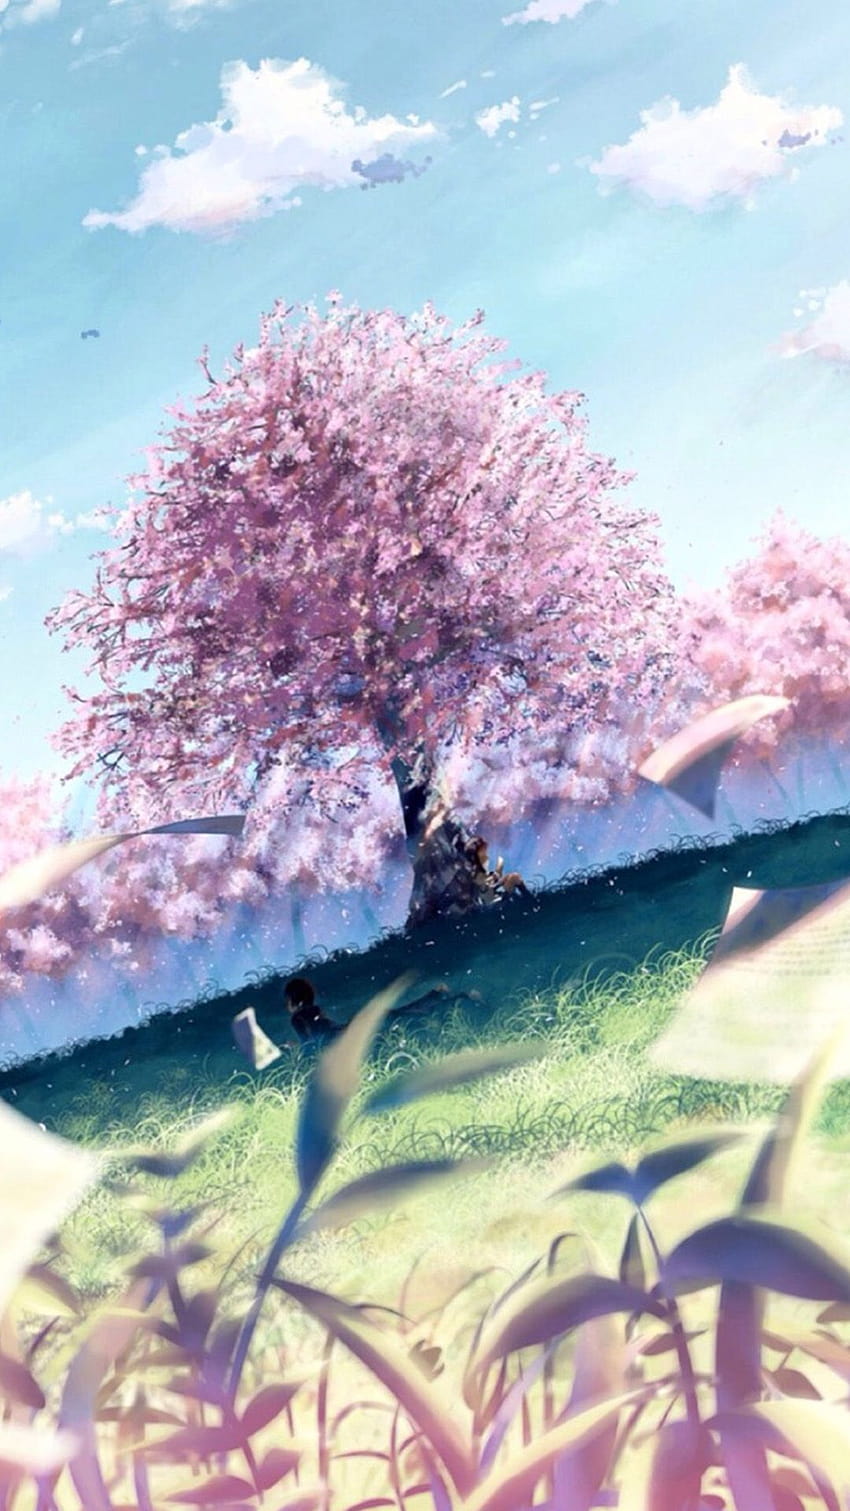 Download wallpaper 1920x1080 girl sakura flowers spring anime full hd  hdtv fhd 1080p hd background